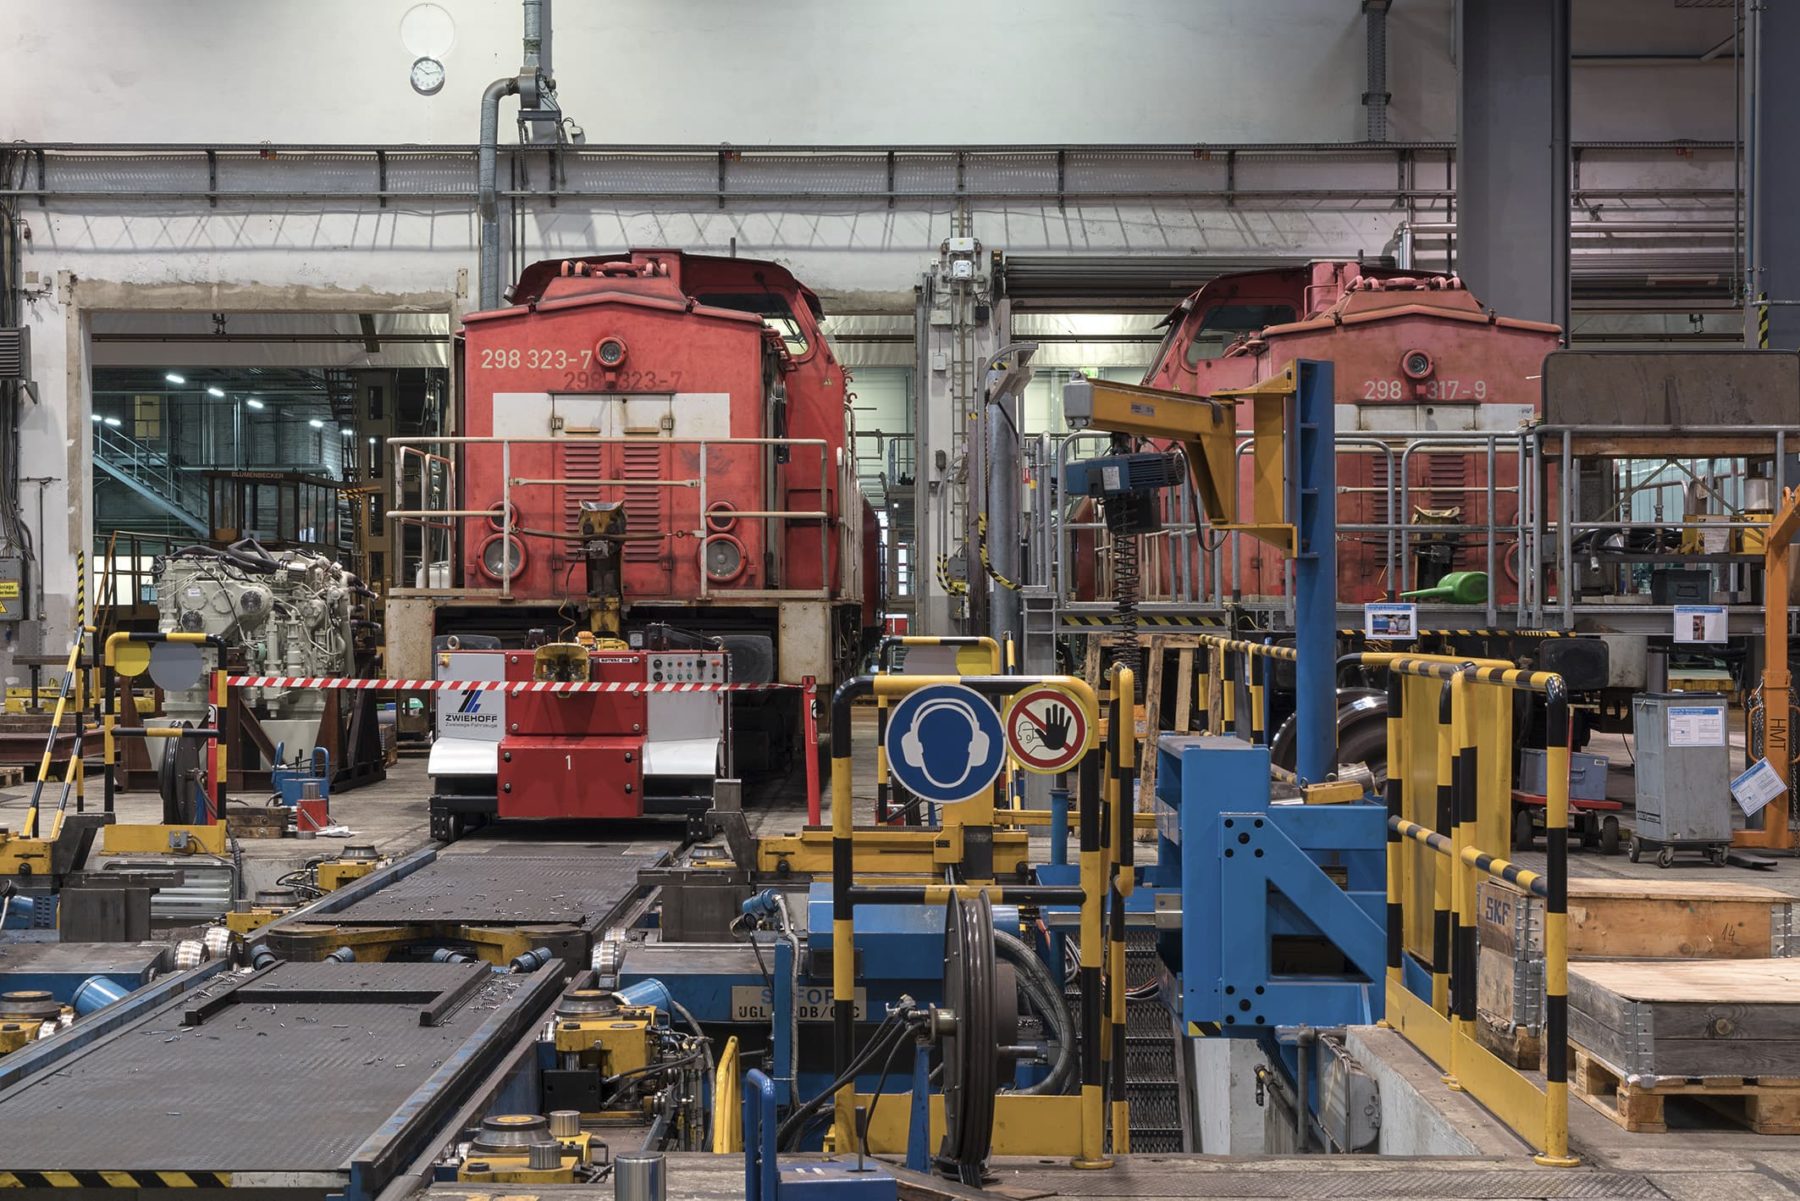 Reparaturhalle für Lokomotiven, zwei rote Lokomotiven stehen in der Halle